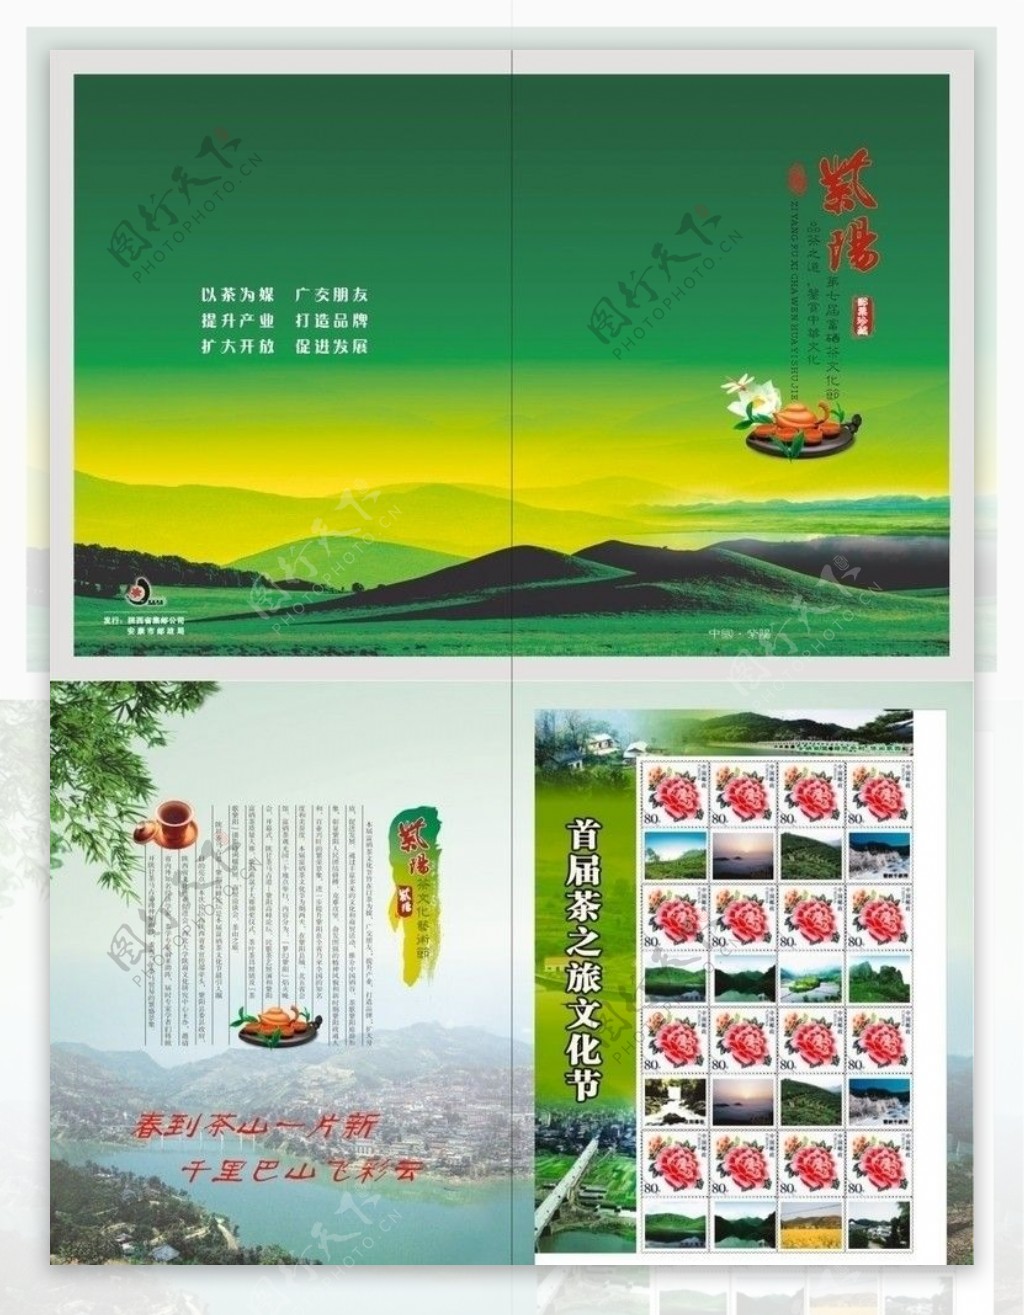 紫阳茶文化节图片